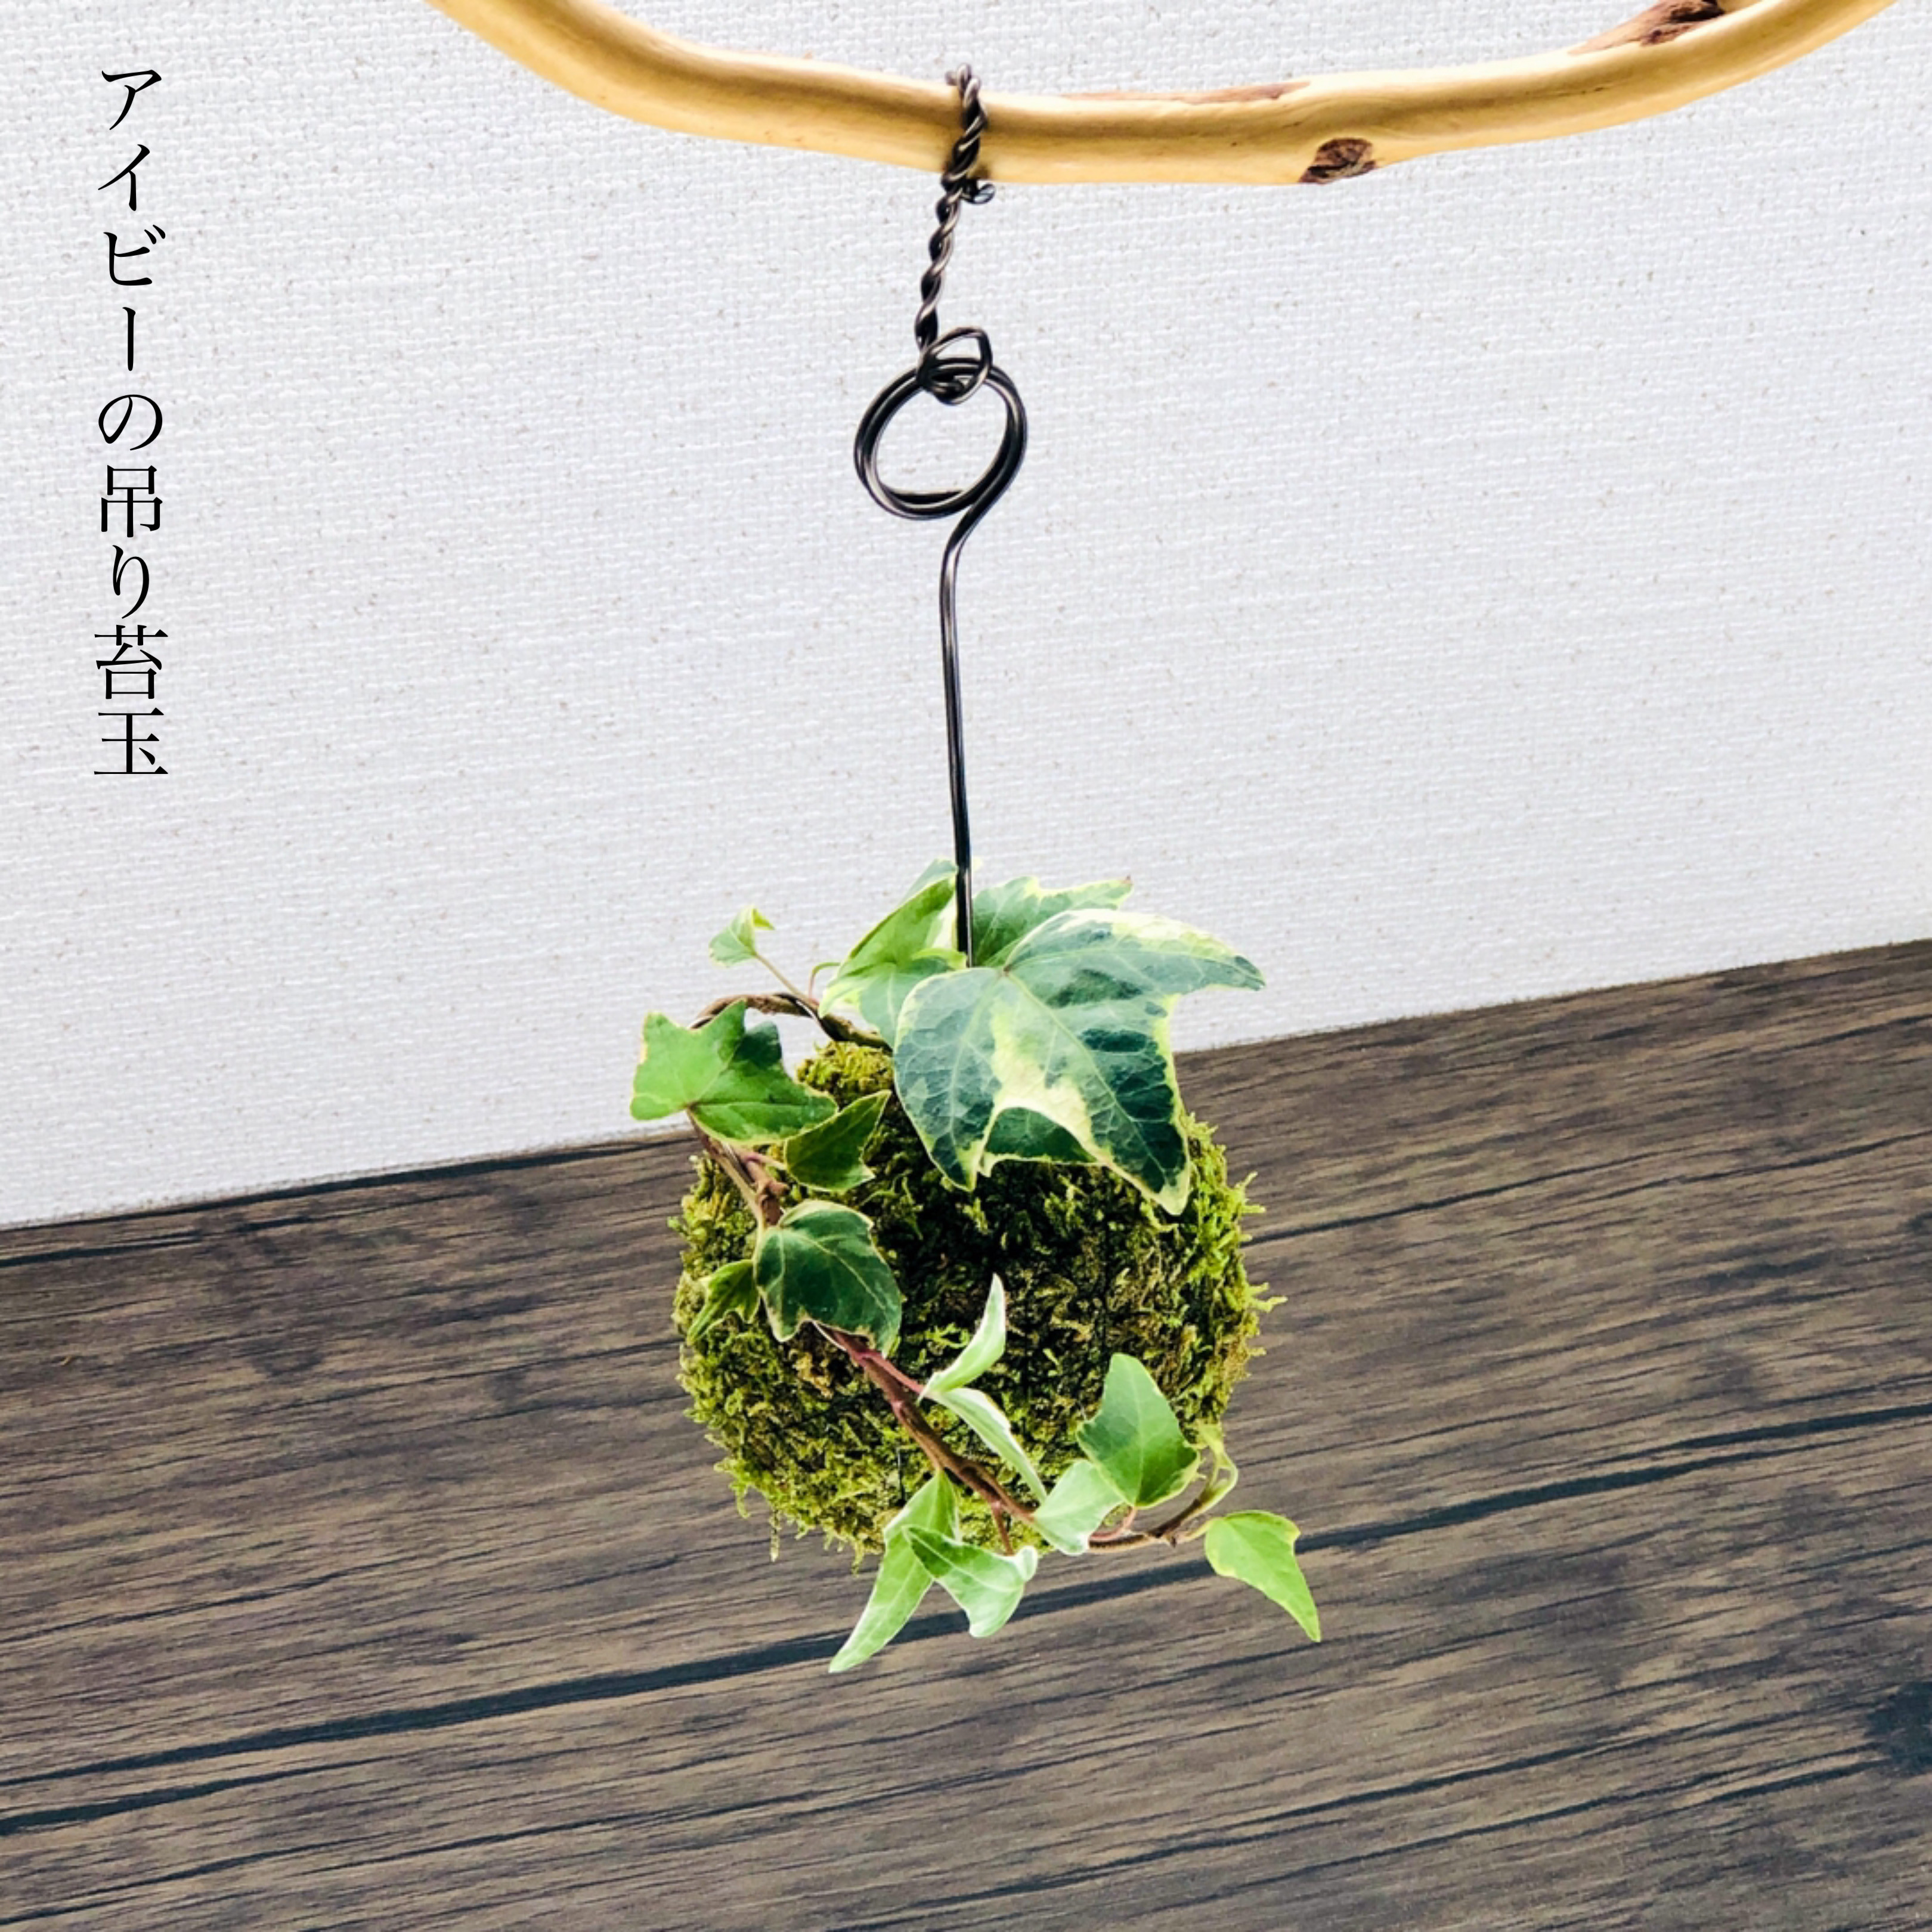 送料無料)アイビーの吊り苔玉『星のような形の葉が愛らしい』 盆栽